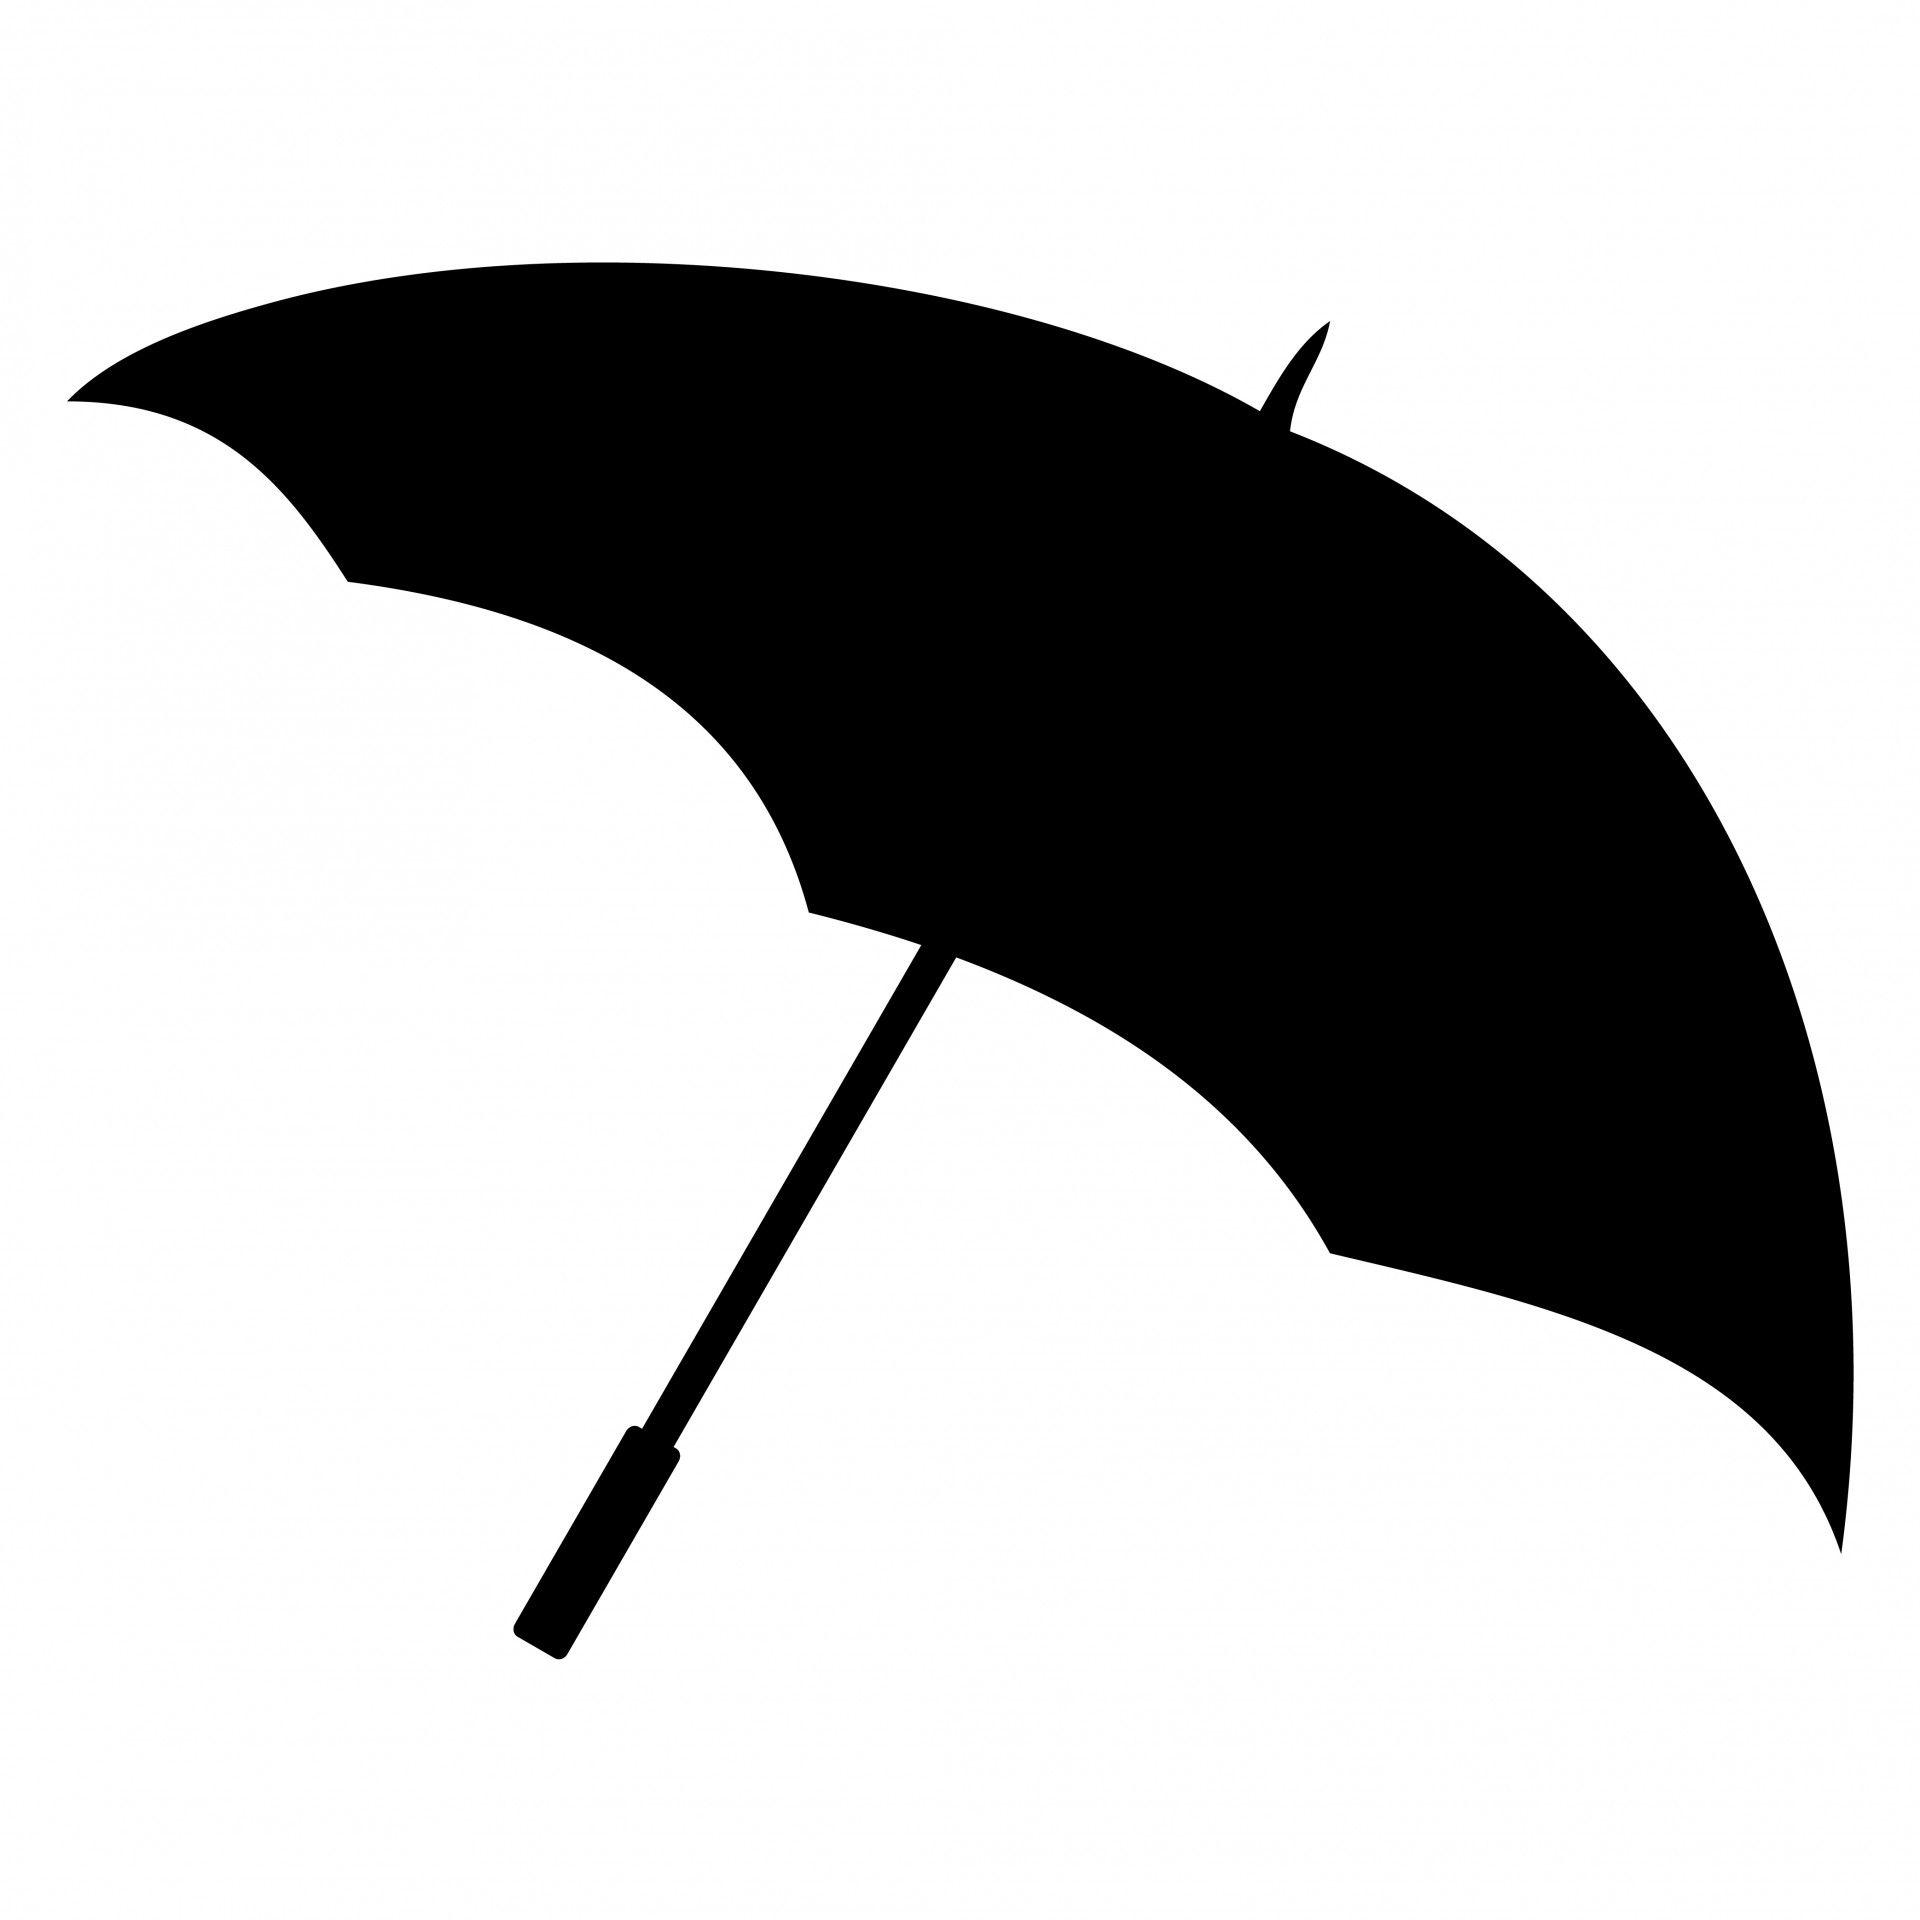 Red Umbrella Outline Logo - Free Umbrella Clipart, Download Free Clip Art, Free Clip Art